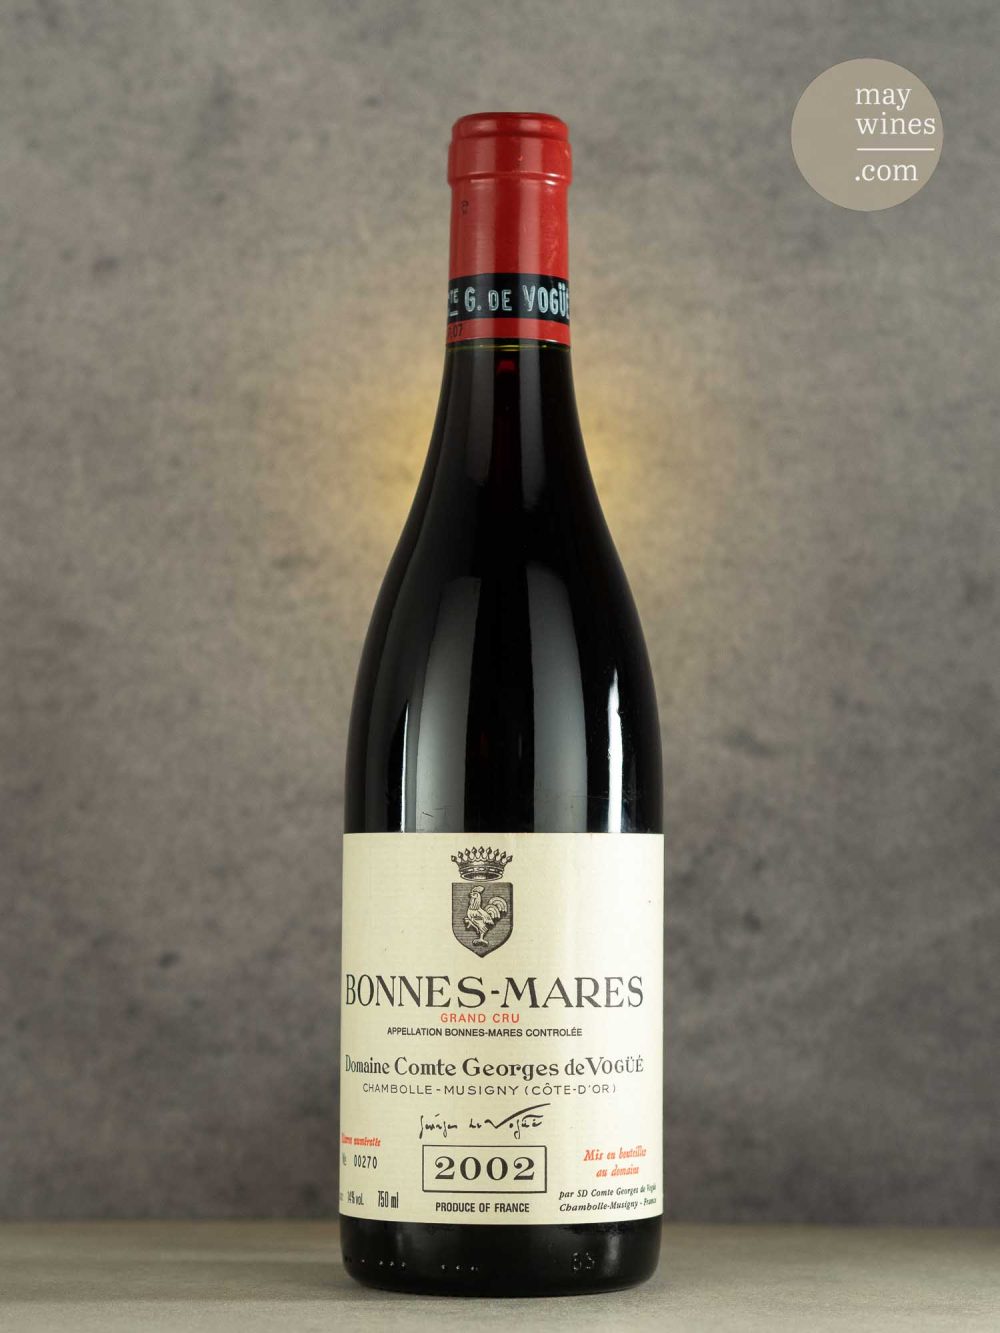 May Wines – Rotwein – 2002 Bonnes Mares Grand Cru - Domaine Comte Georges de Vogüé